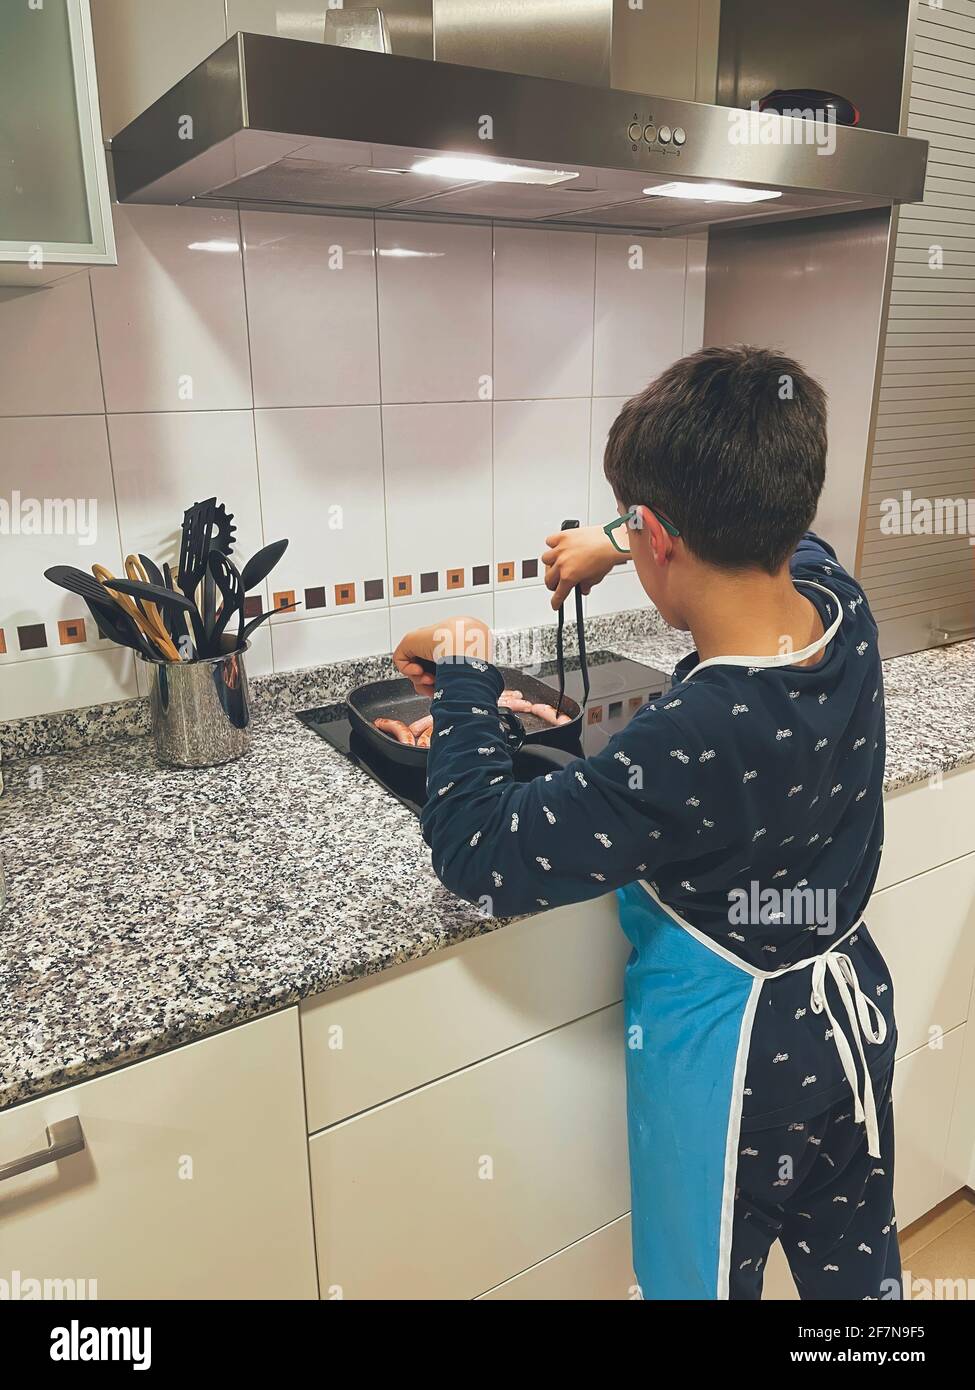 ragazzo in pigiama e un grembiule, cucinando le salsicce in una padella in una cucina moderna, preparando la propria cena, verticale Foto Stock